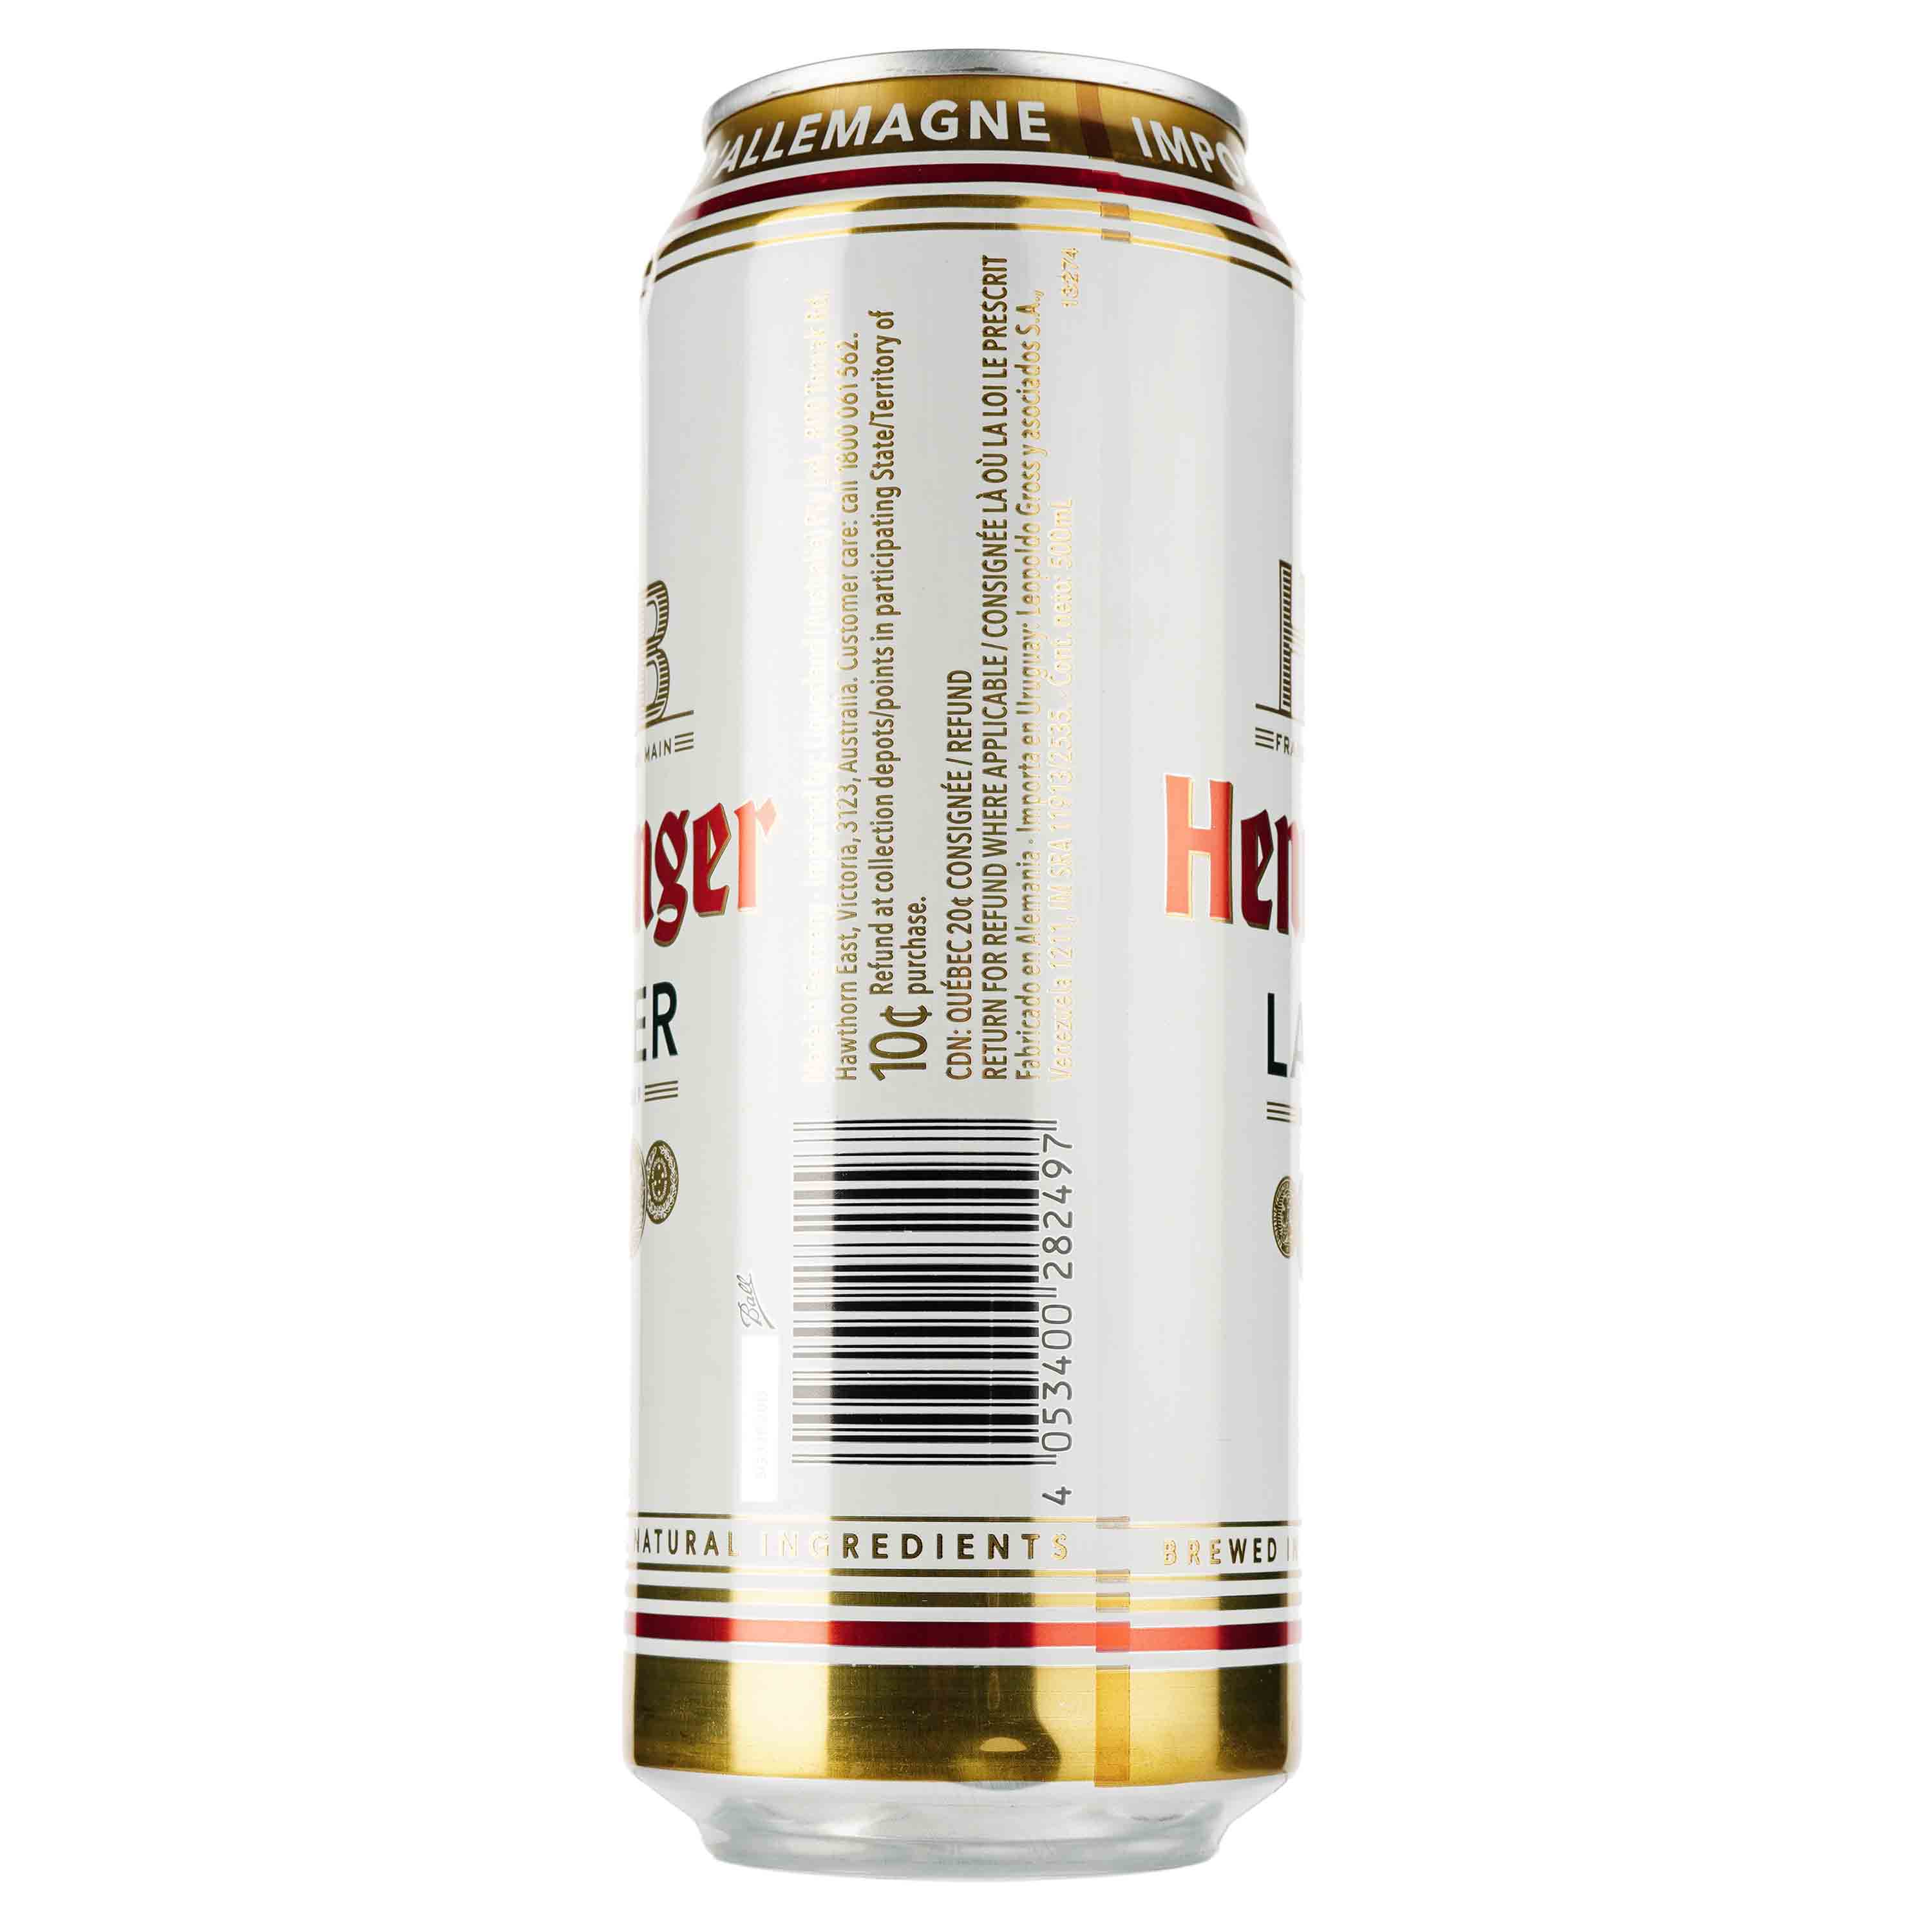 Пиво Henninger Lager, светлое, фильтрованное, 4,8%, ж/б, 0,5 л - фото 2